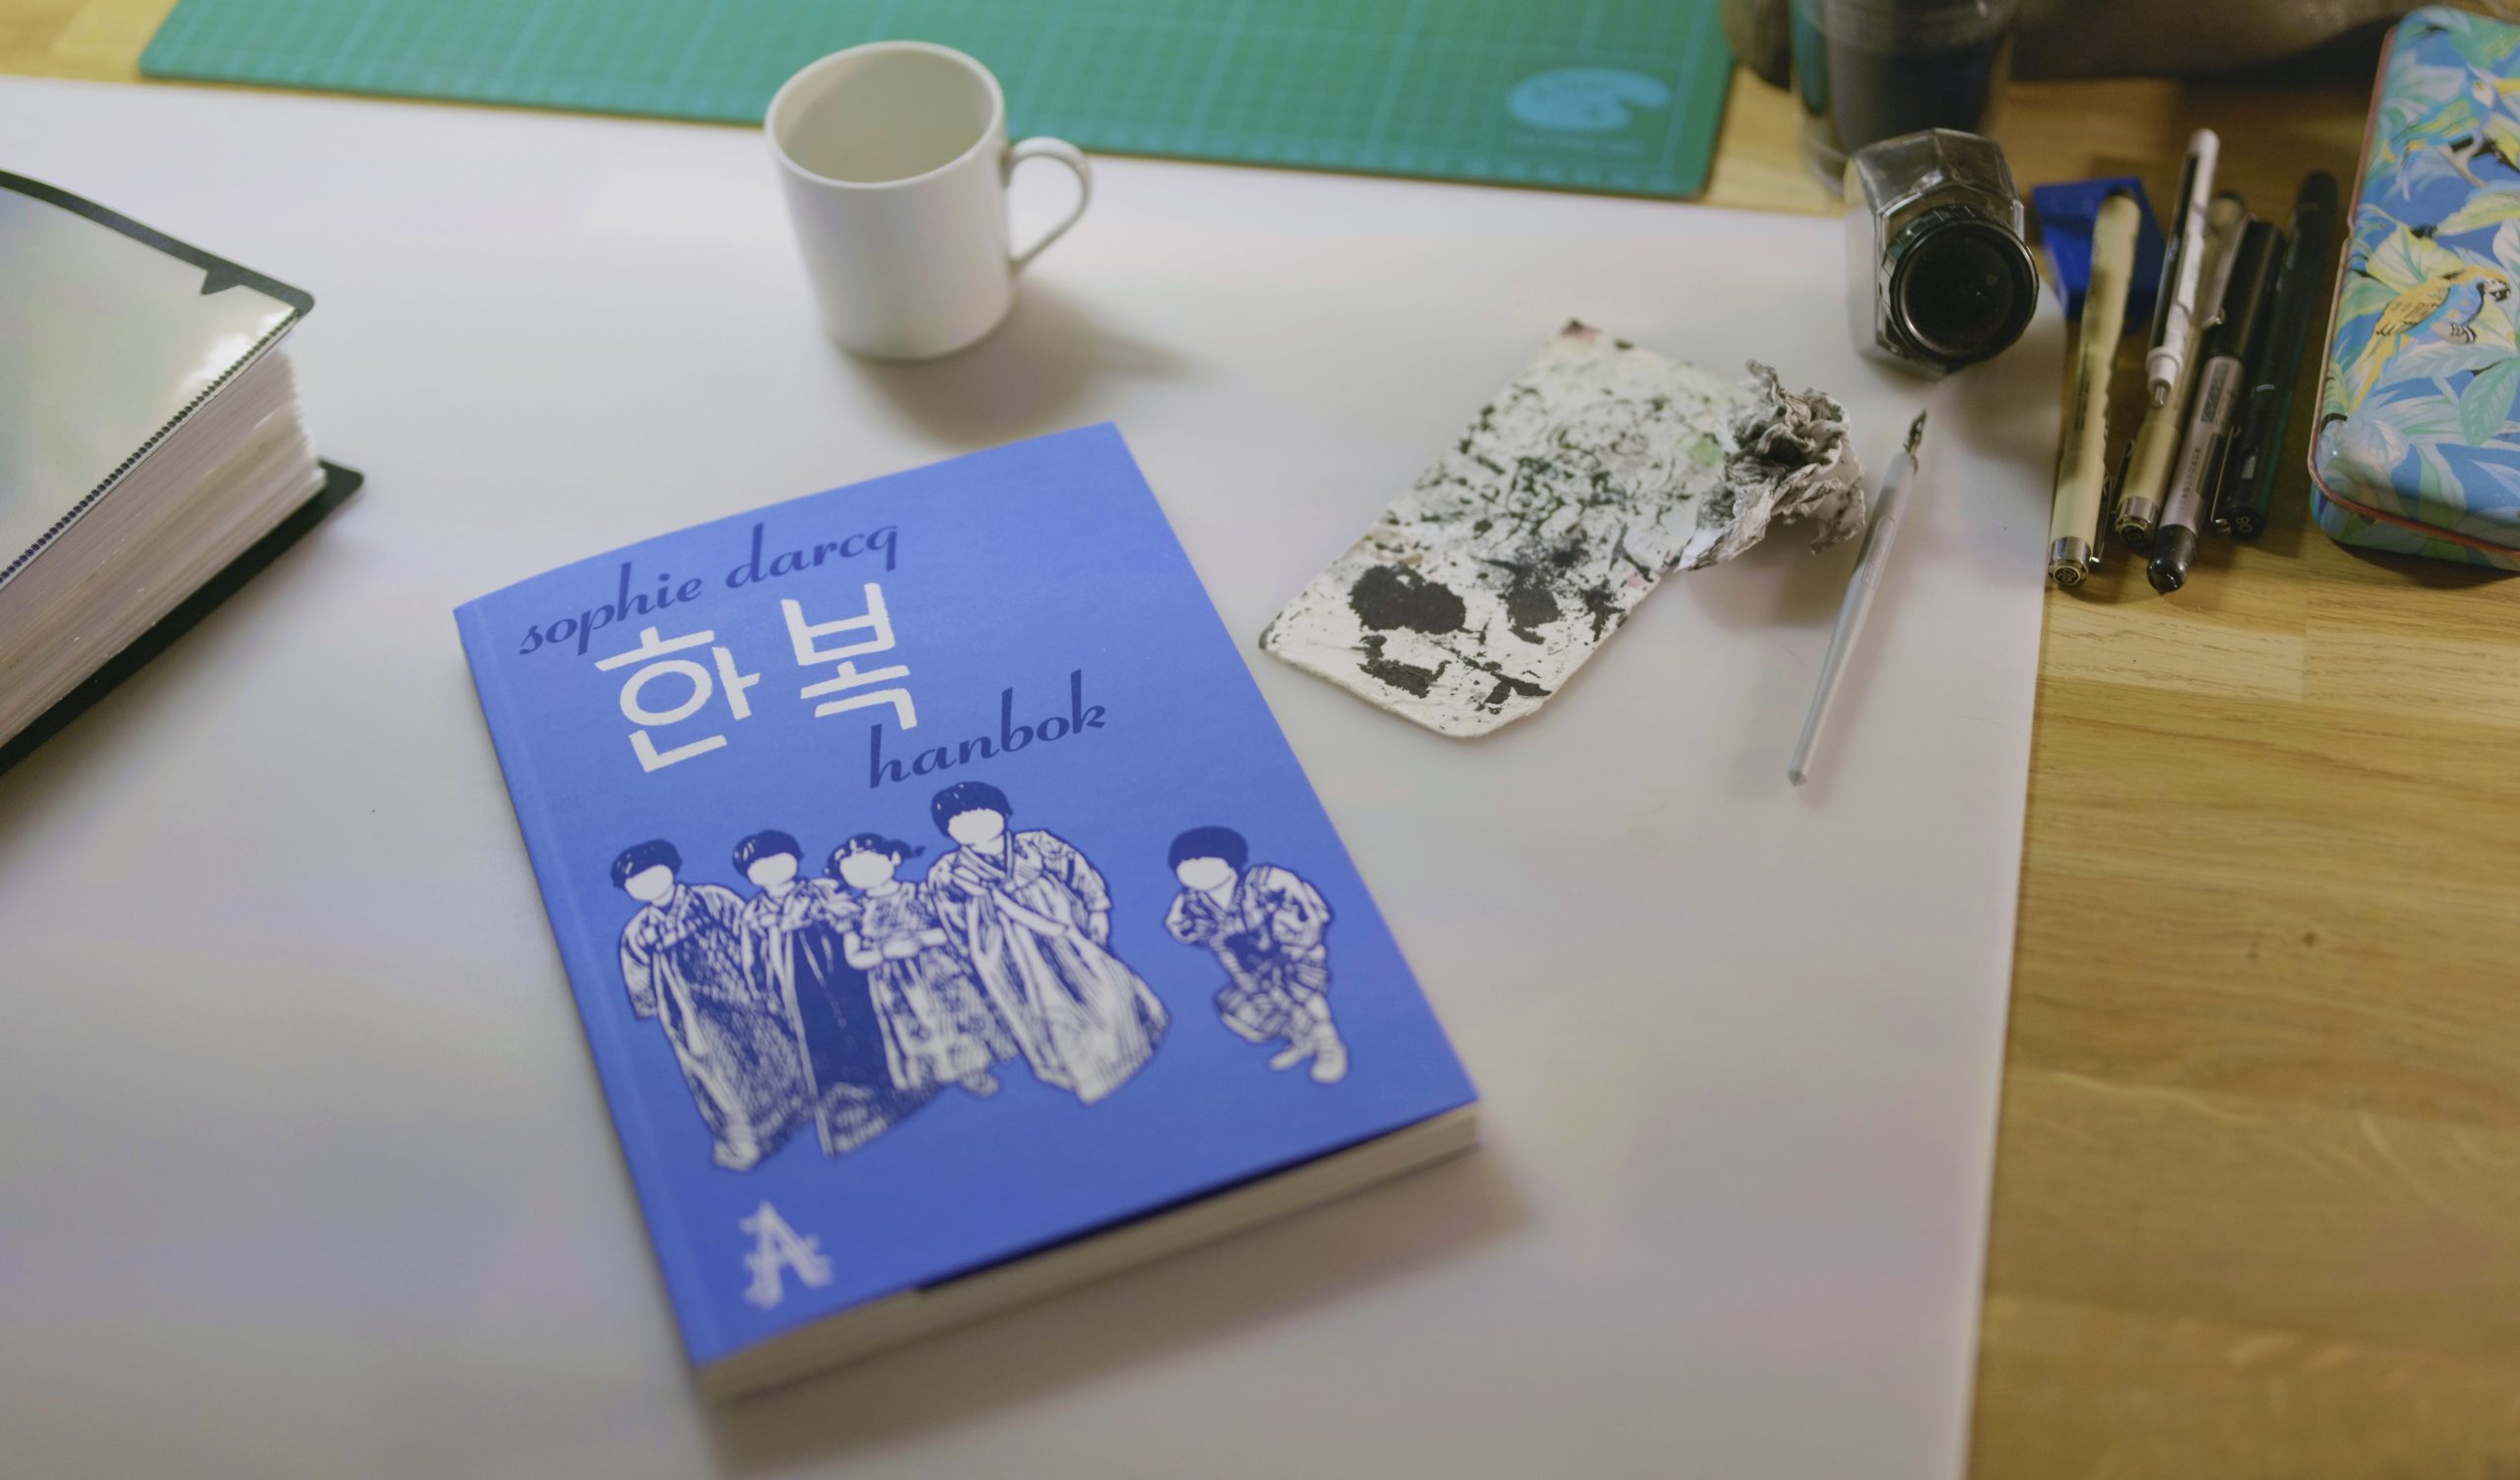 "Hanbok" de Sophie Darcq, un roman graphique sorti le 21 janvier 2023. (Crédits : Gwenael Germain)